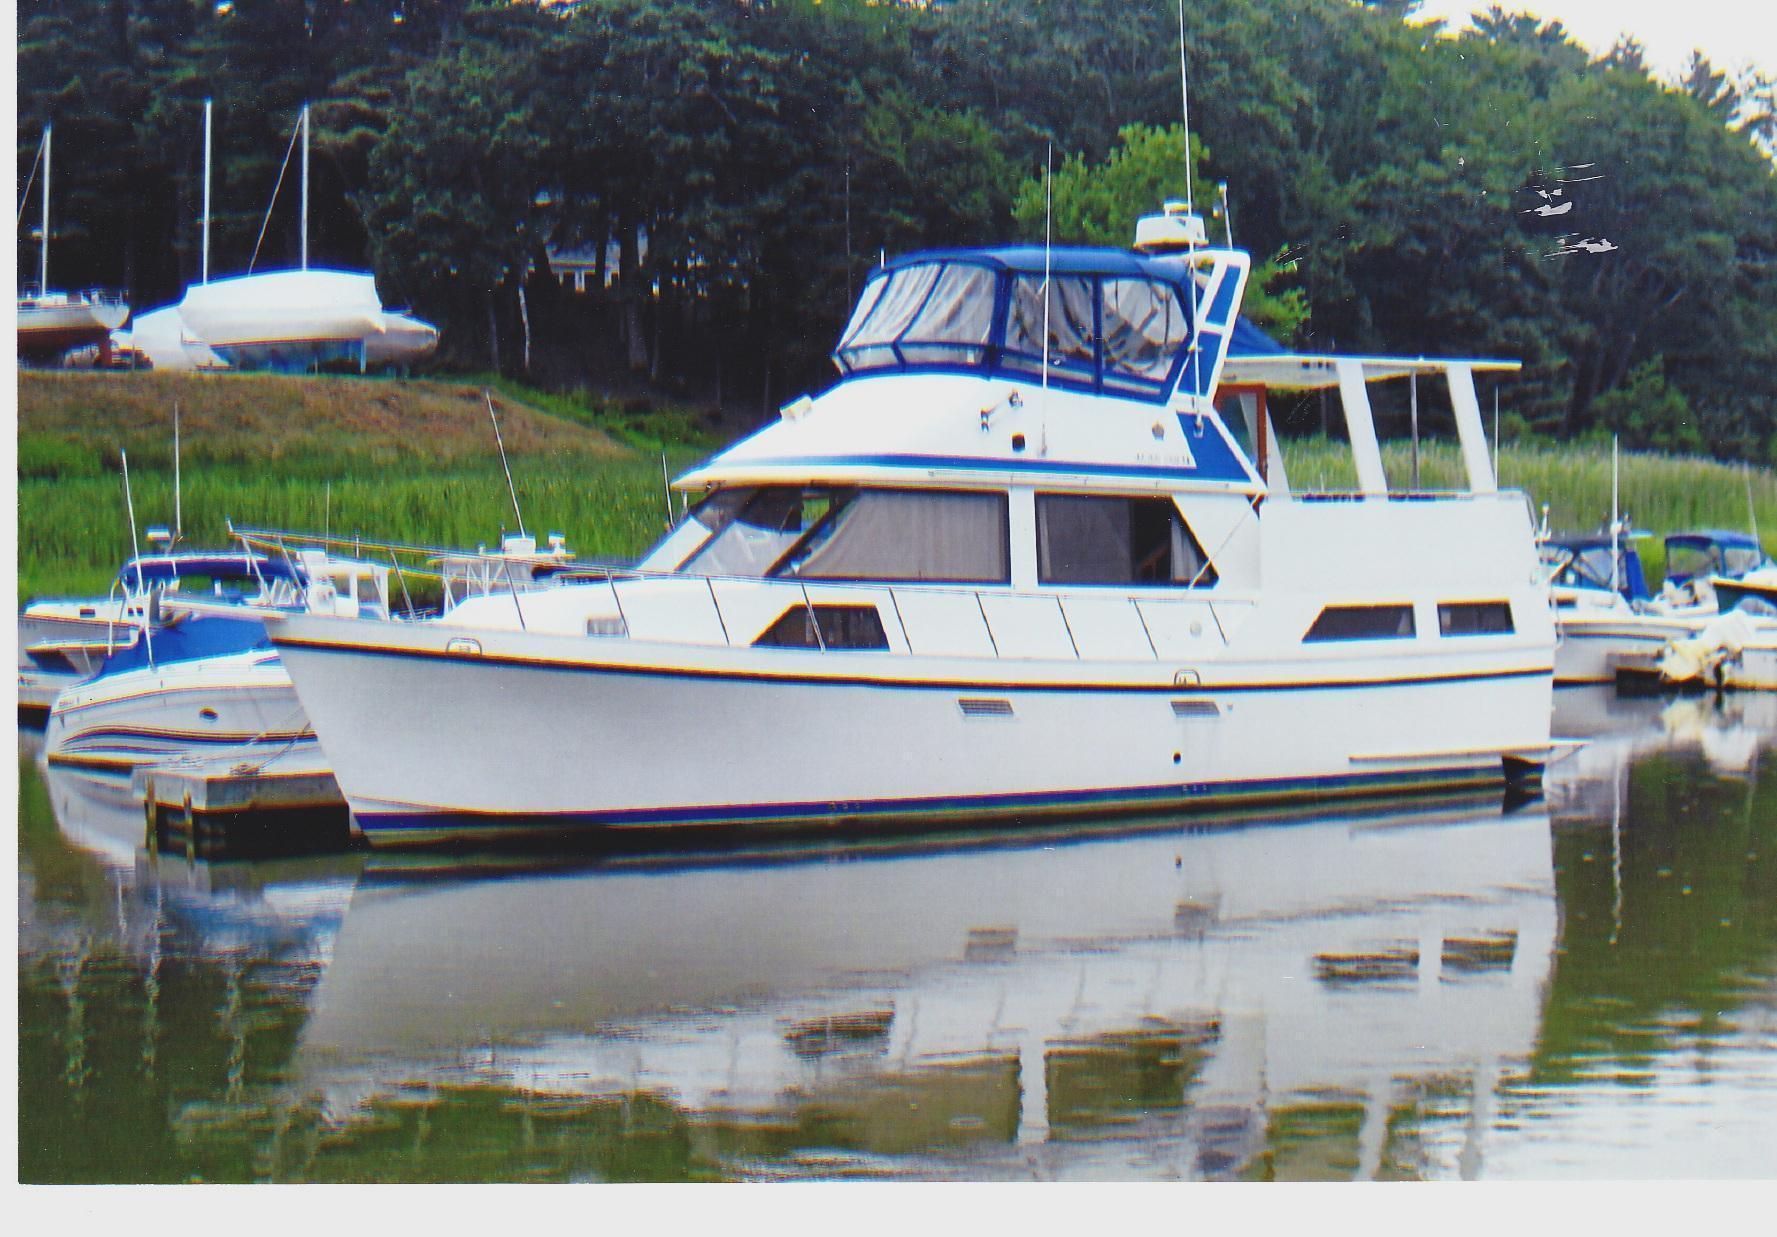 Golden Star 38 Sundeck Trawler, Verplank